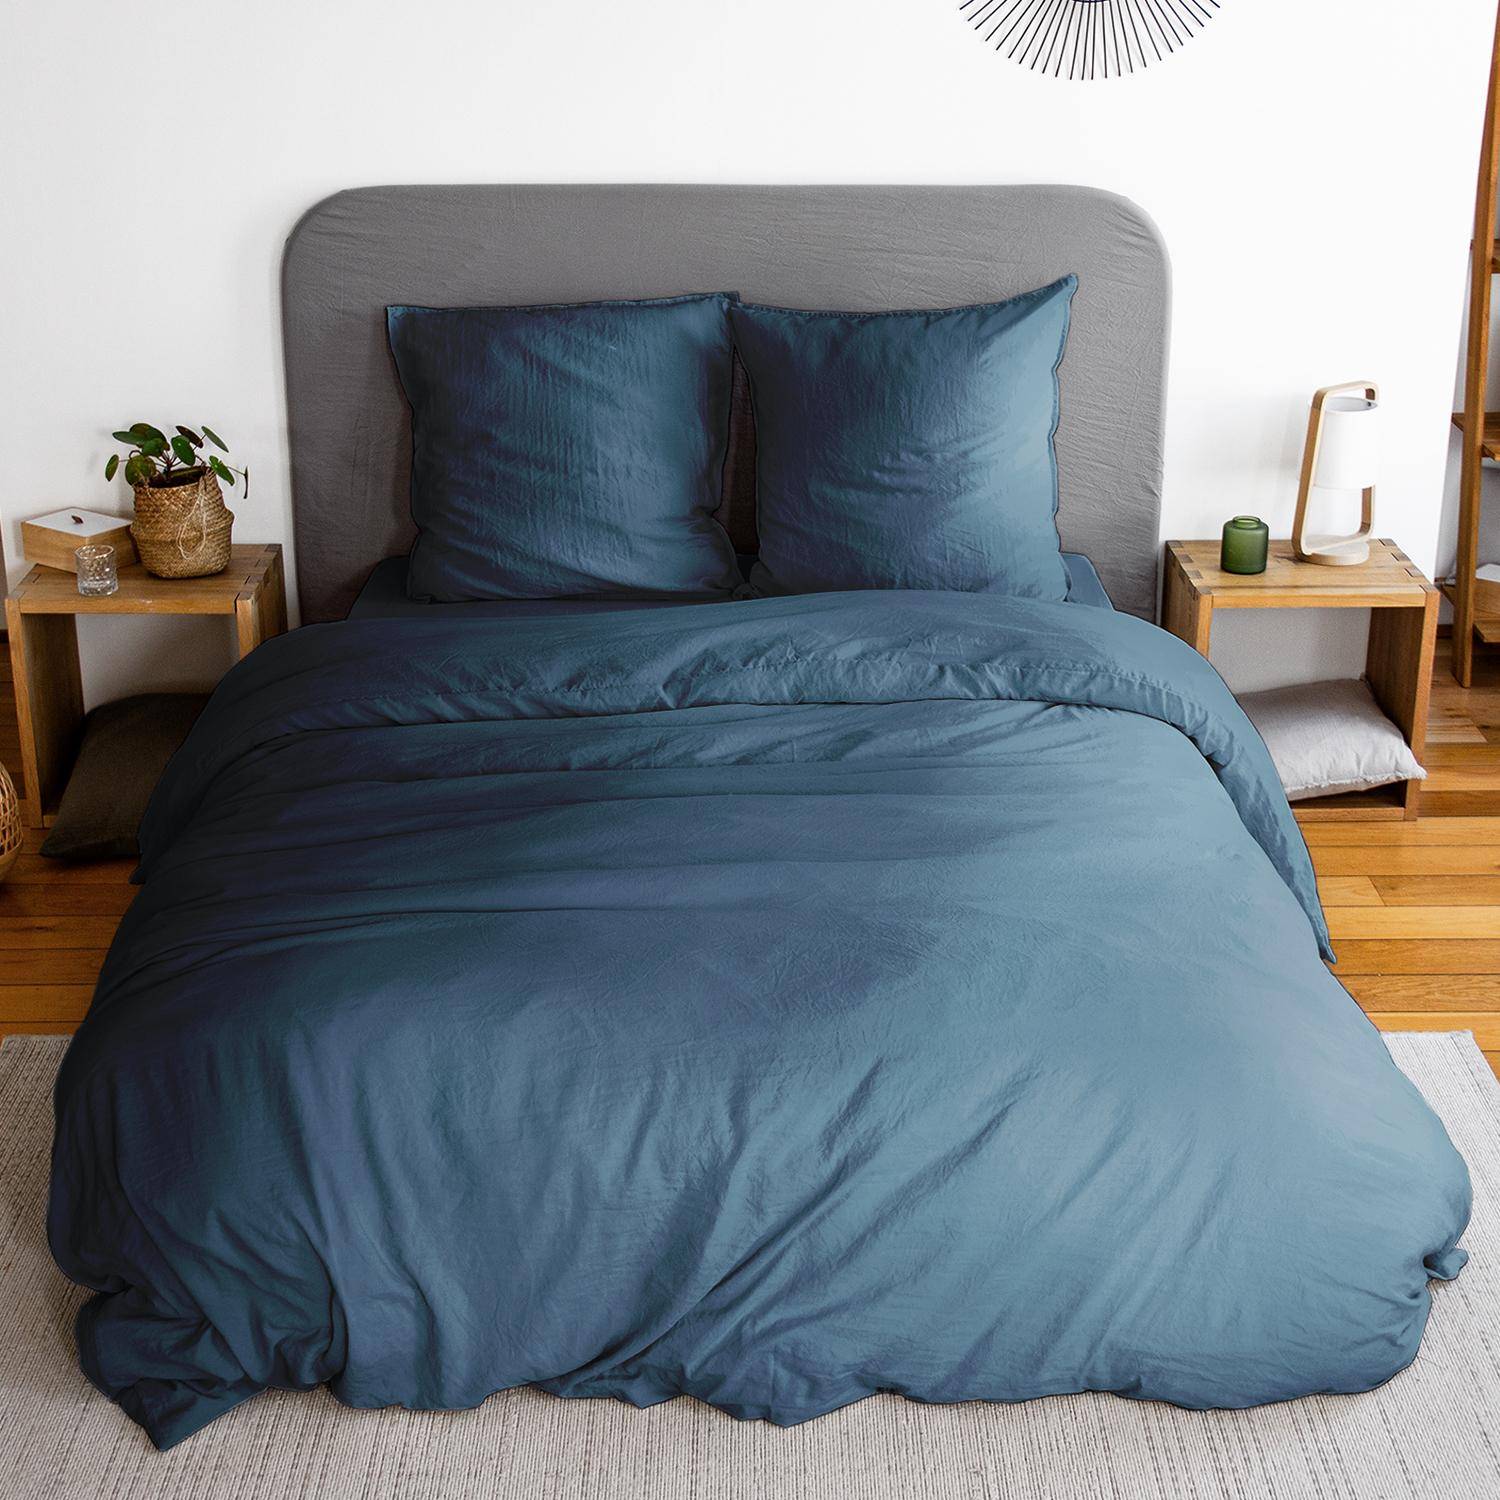 Bettwäsche-Set aus vorgewaschener Mikrofaser in nachtblau 240 x 220 cm für Doppelbetten, 1 Bettbezug und 2 Kissenbezüge Photo1